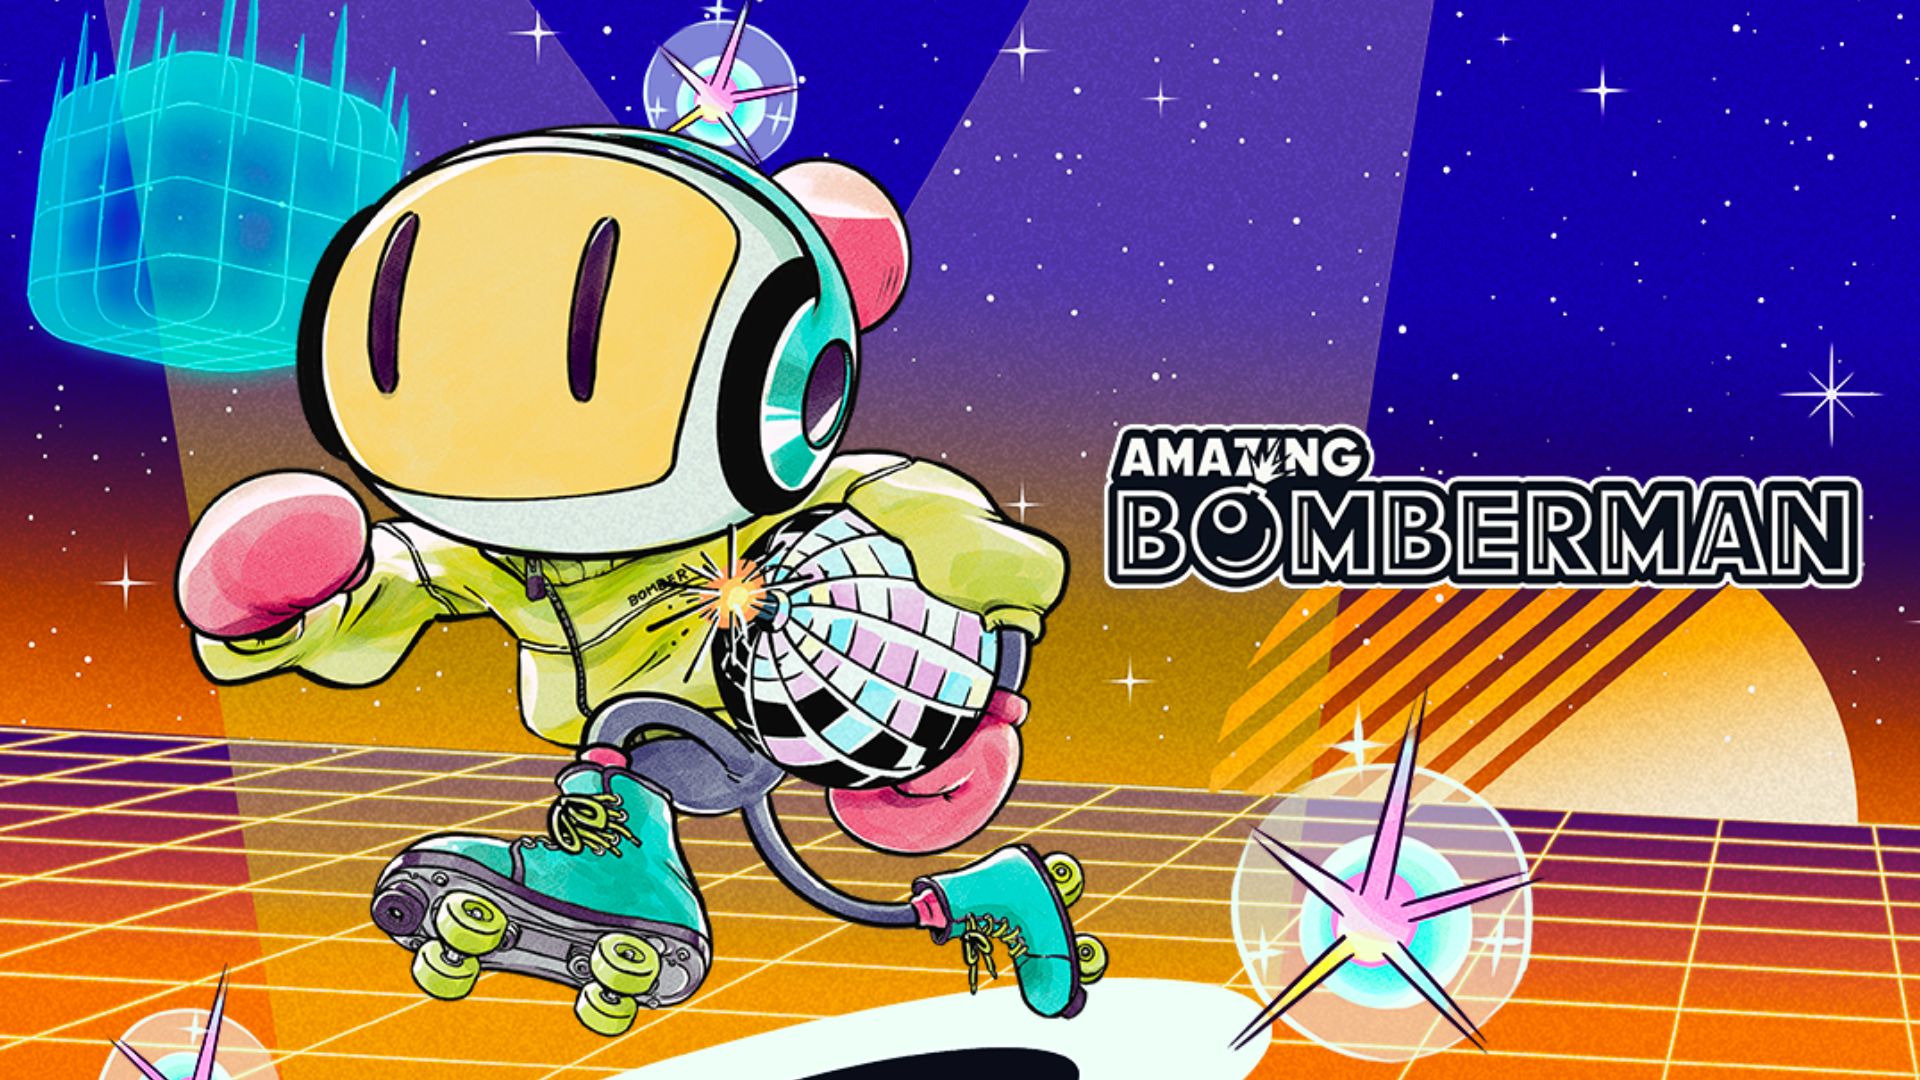 My fan art of that boss from Super Bomberman 2 : r/bomberman